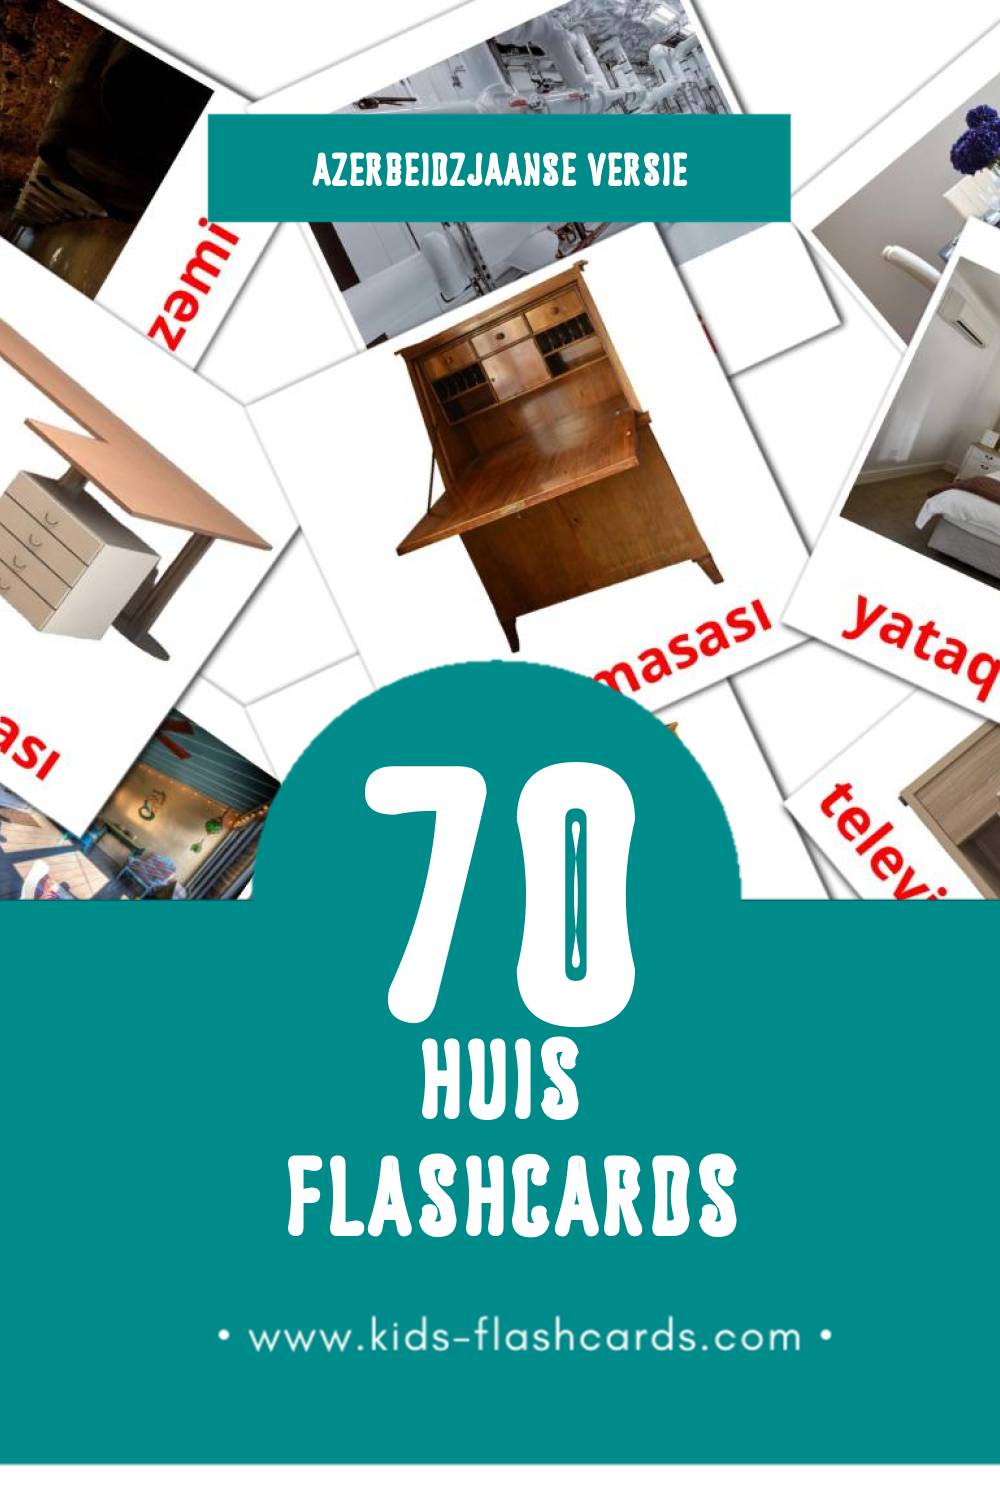 Visuele Будинок Flashcards voor Kleuters (70 kaarten in het Azerbeidzjaans)